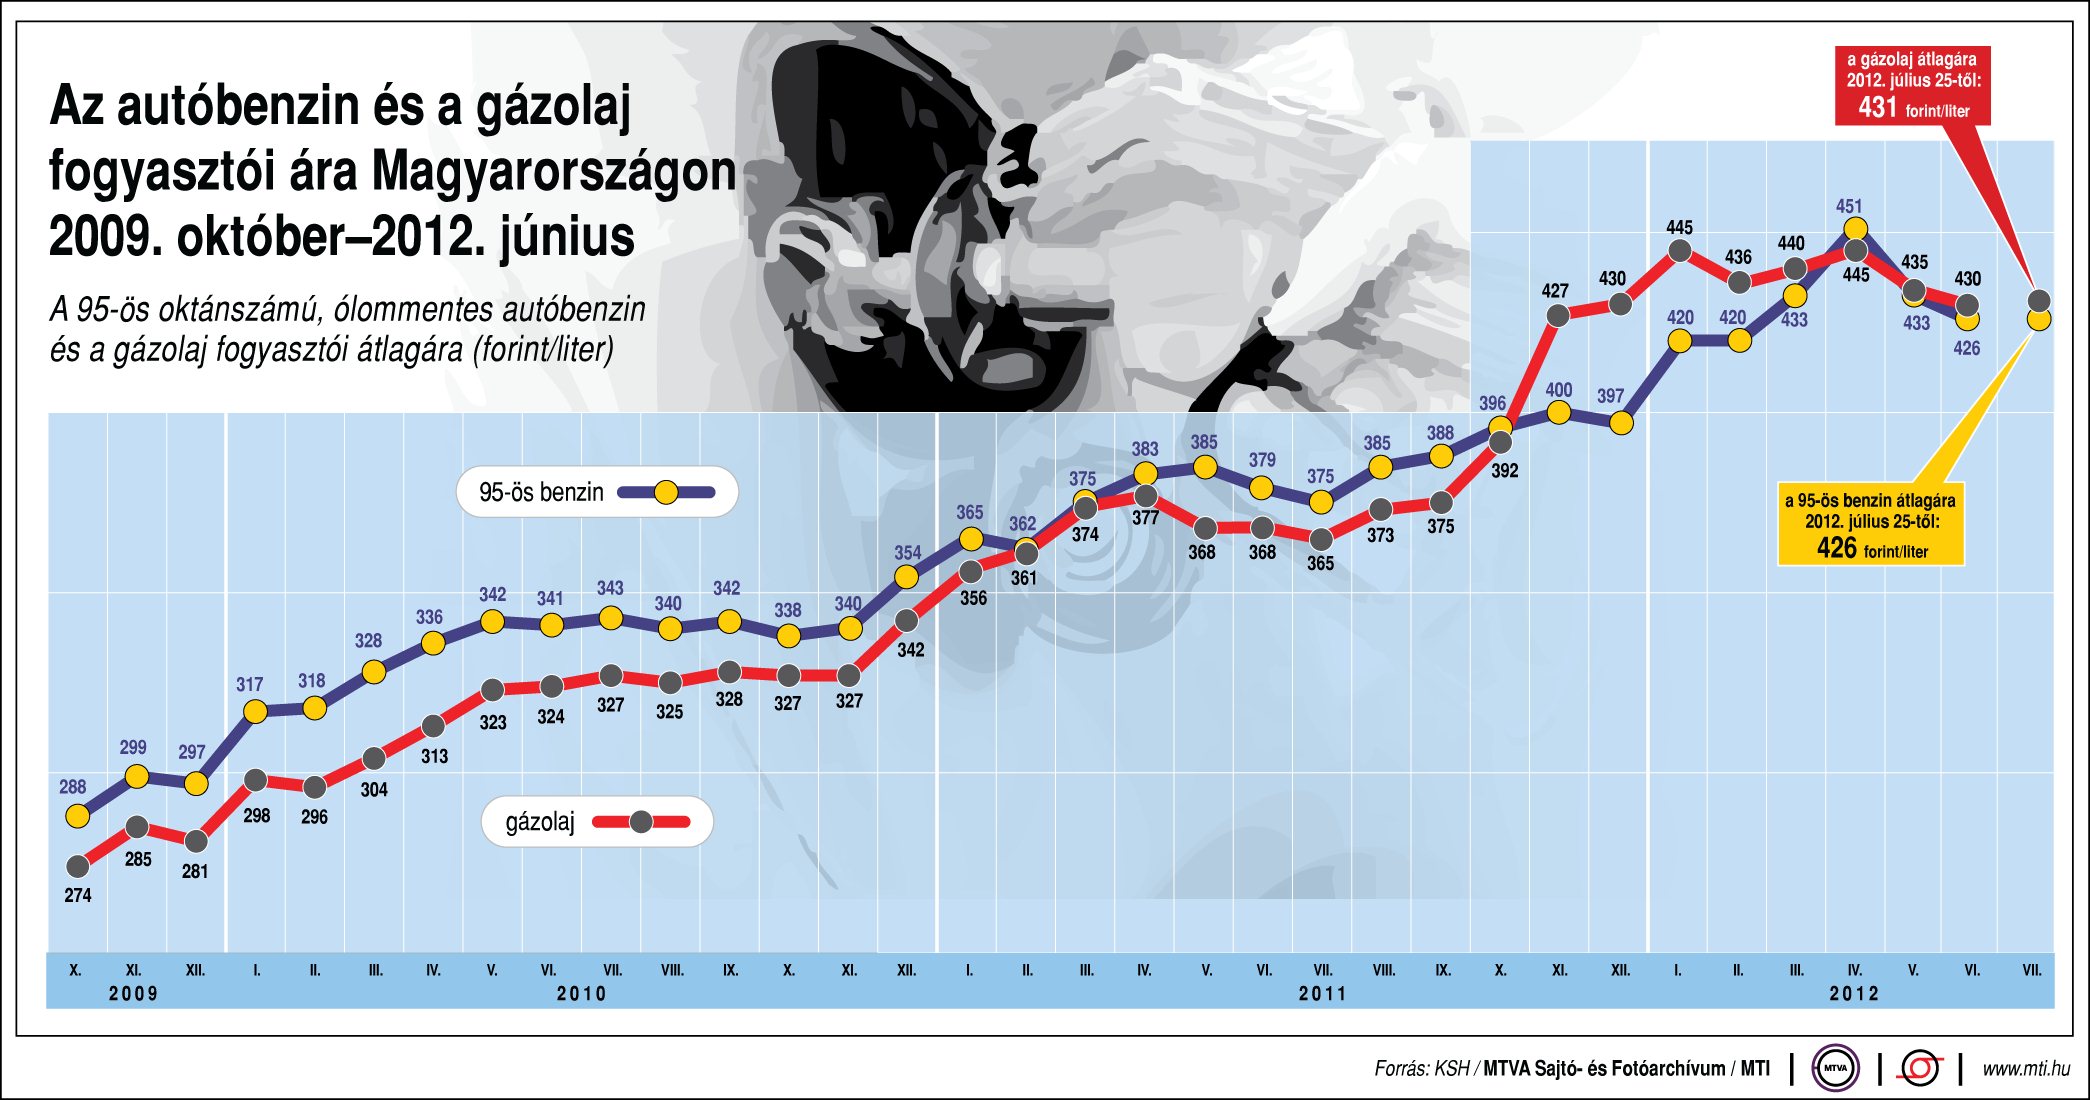 Az autóbenzin és a gázolaj fogyasztói ára Magyarországon, 2009. október-2012. június